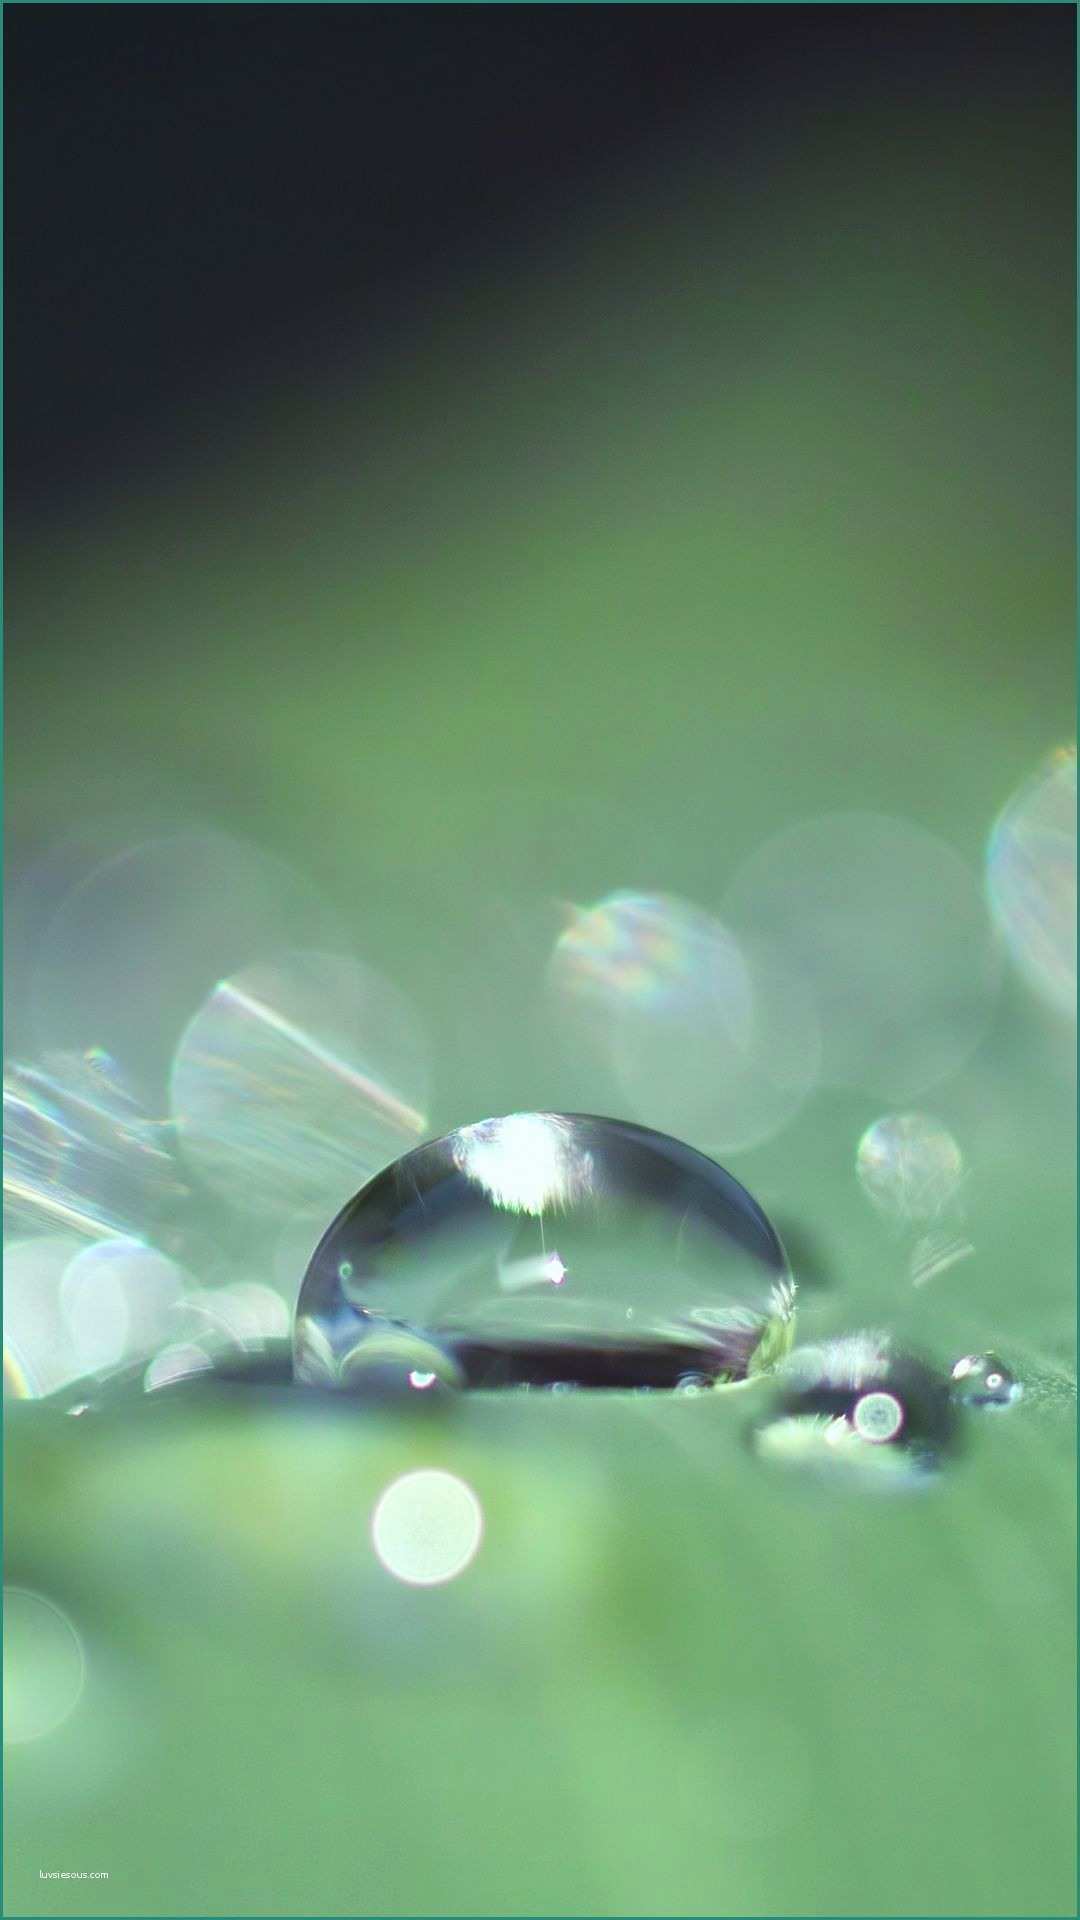 Immagini Paesaggi Naturali Gratis E Close Up Drops Leaf Surface Bokeh 1080x1920 Wallpaper